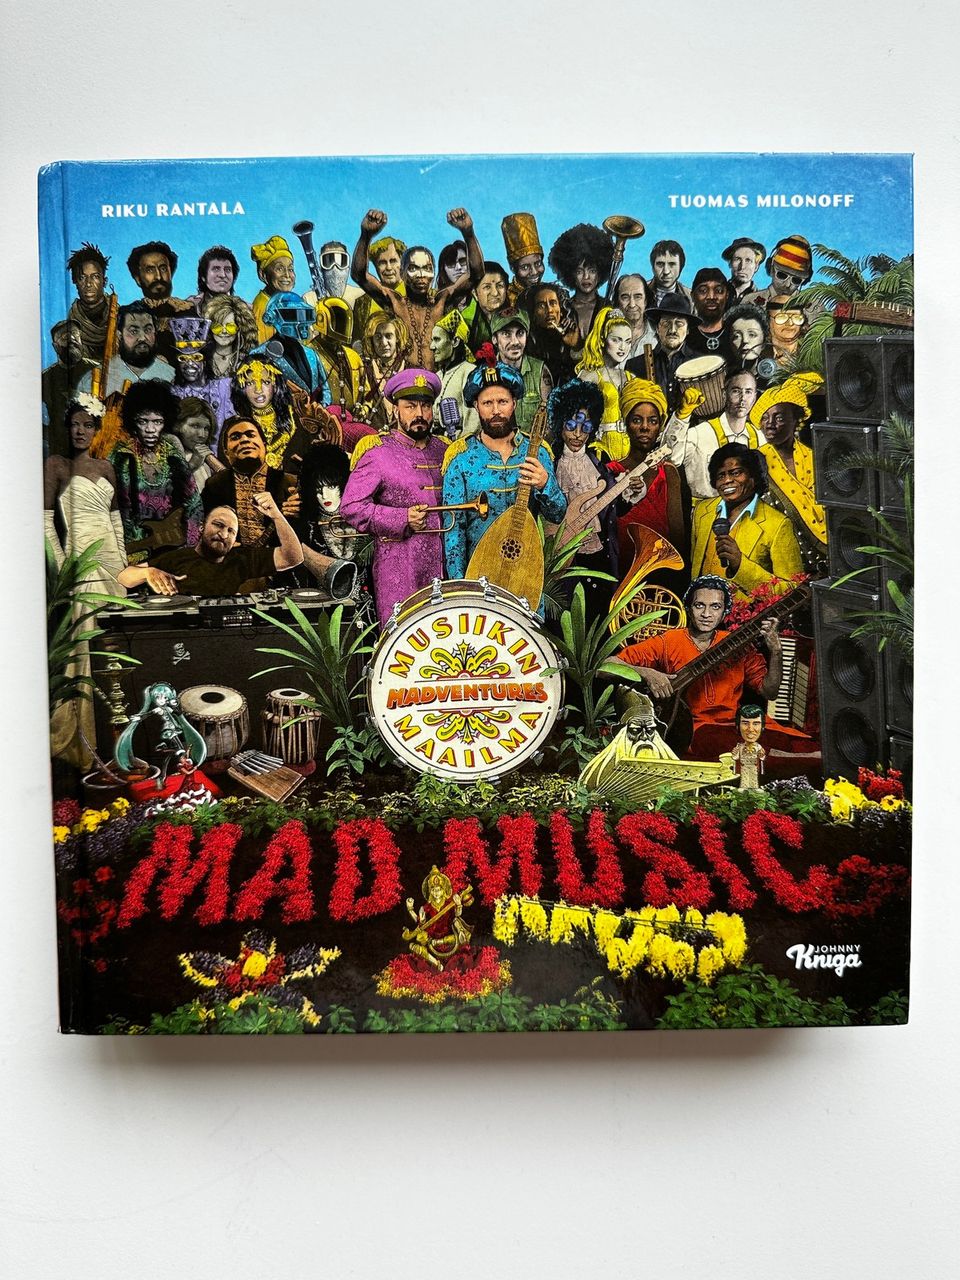 Madventures "Mad Music" kirja